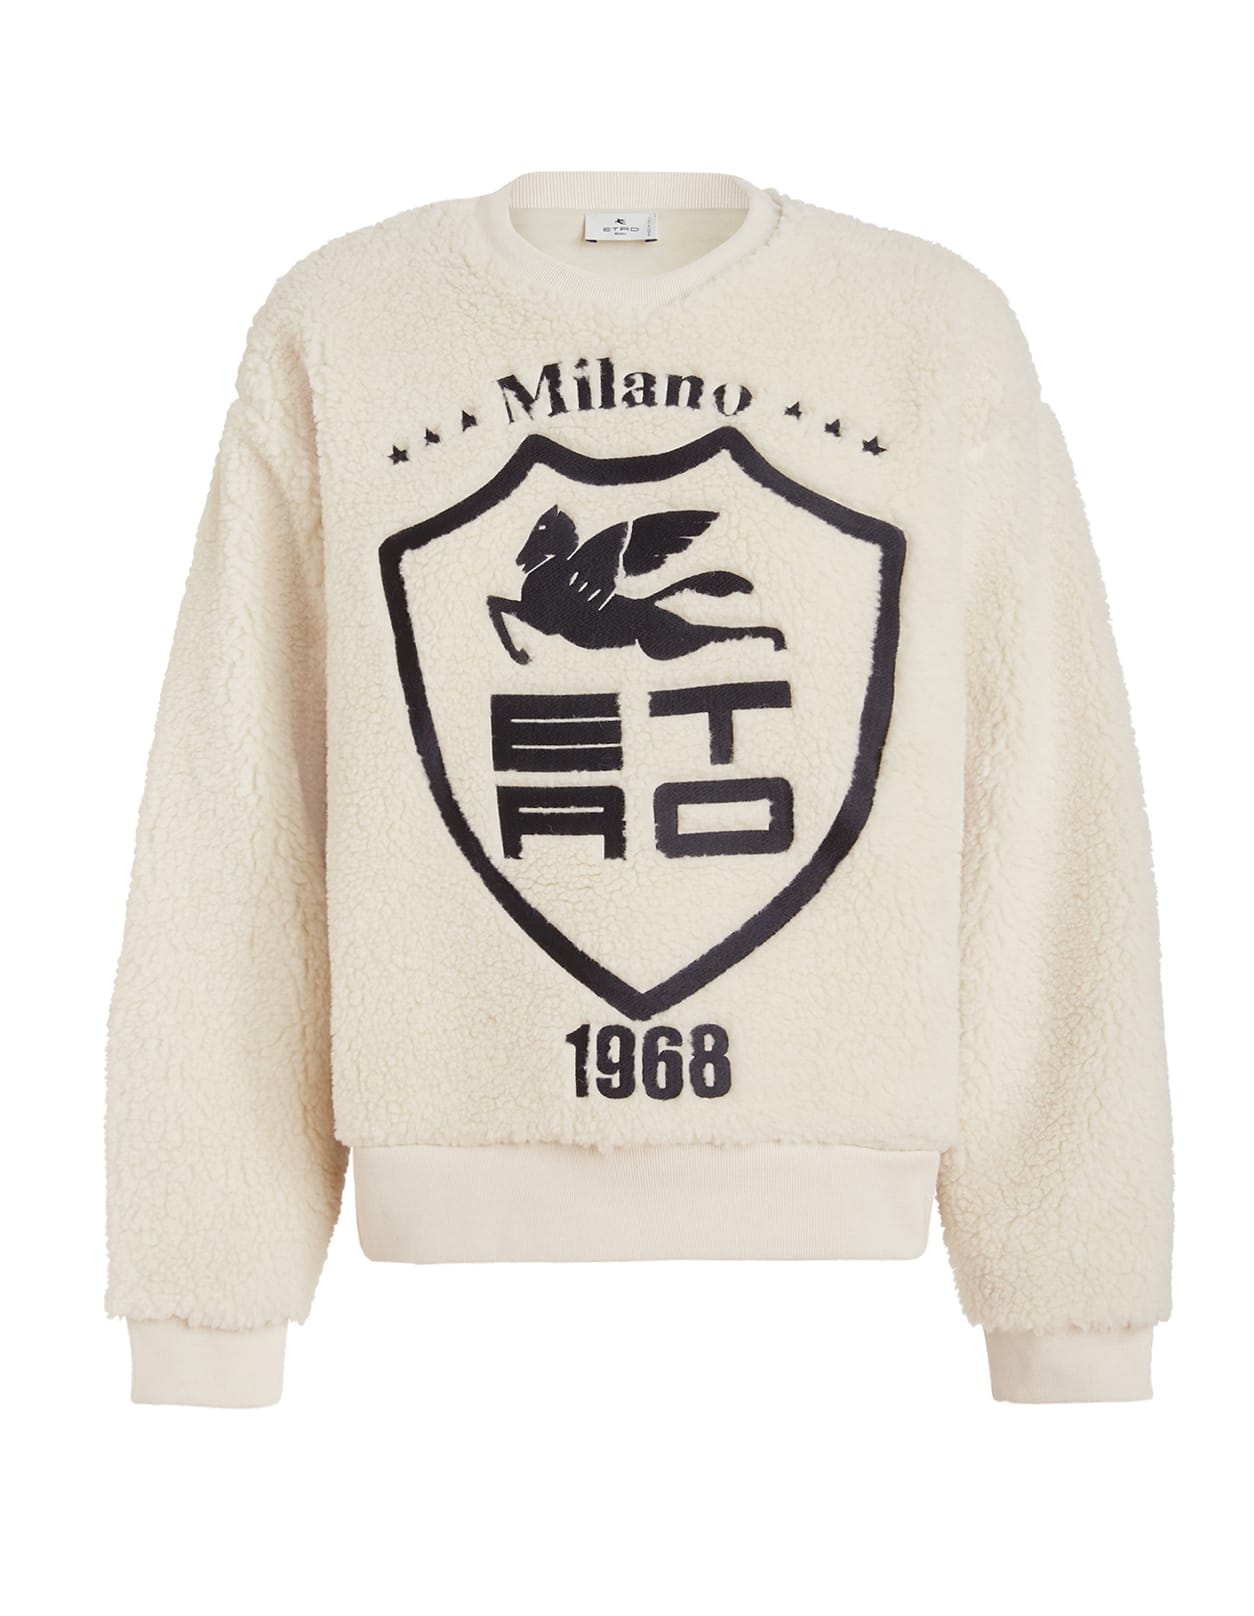 Woman White Sweatshirt With Etro Milano 1968 Logo And Pegasus